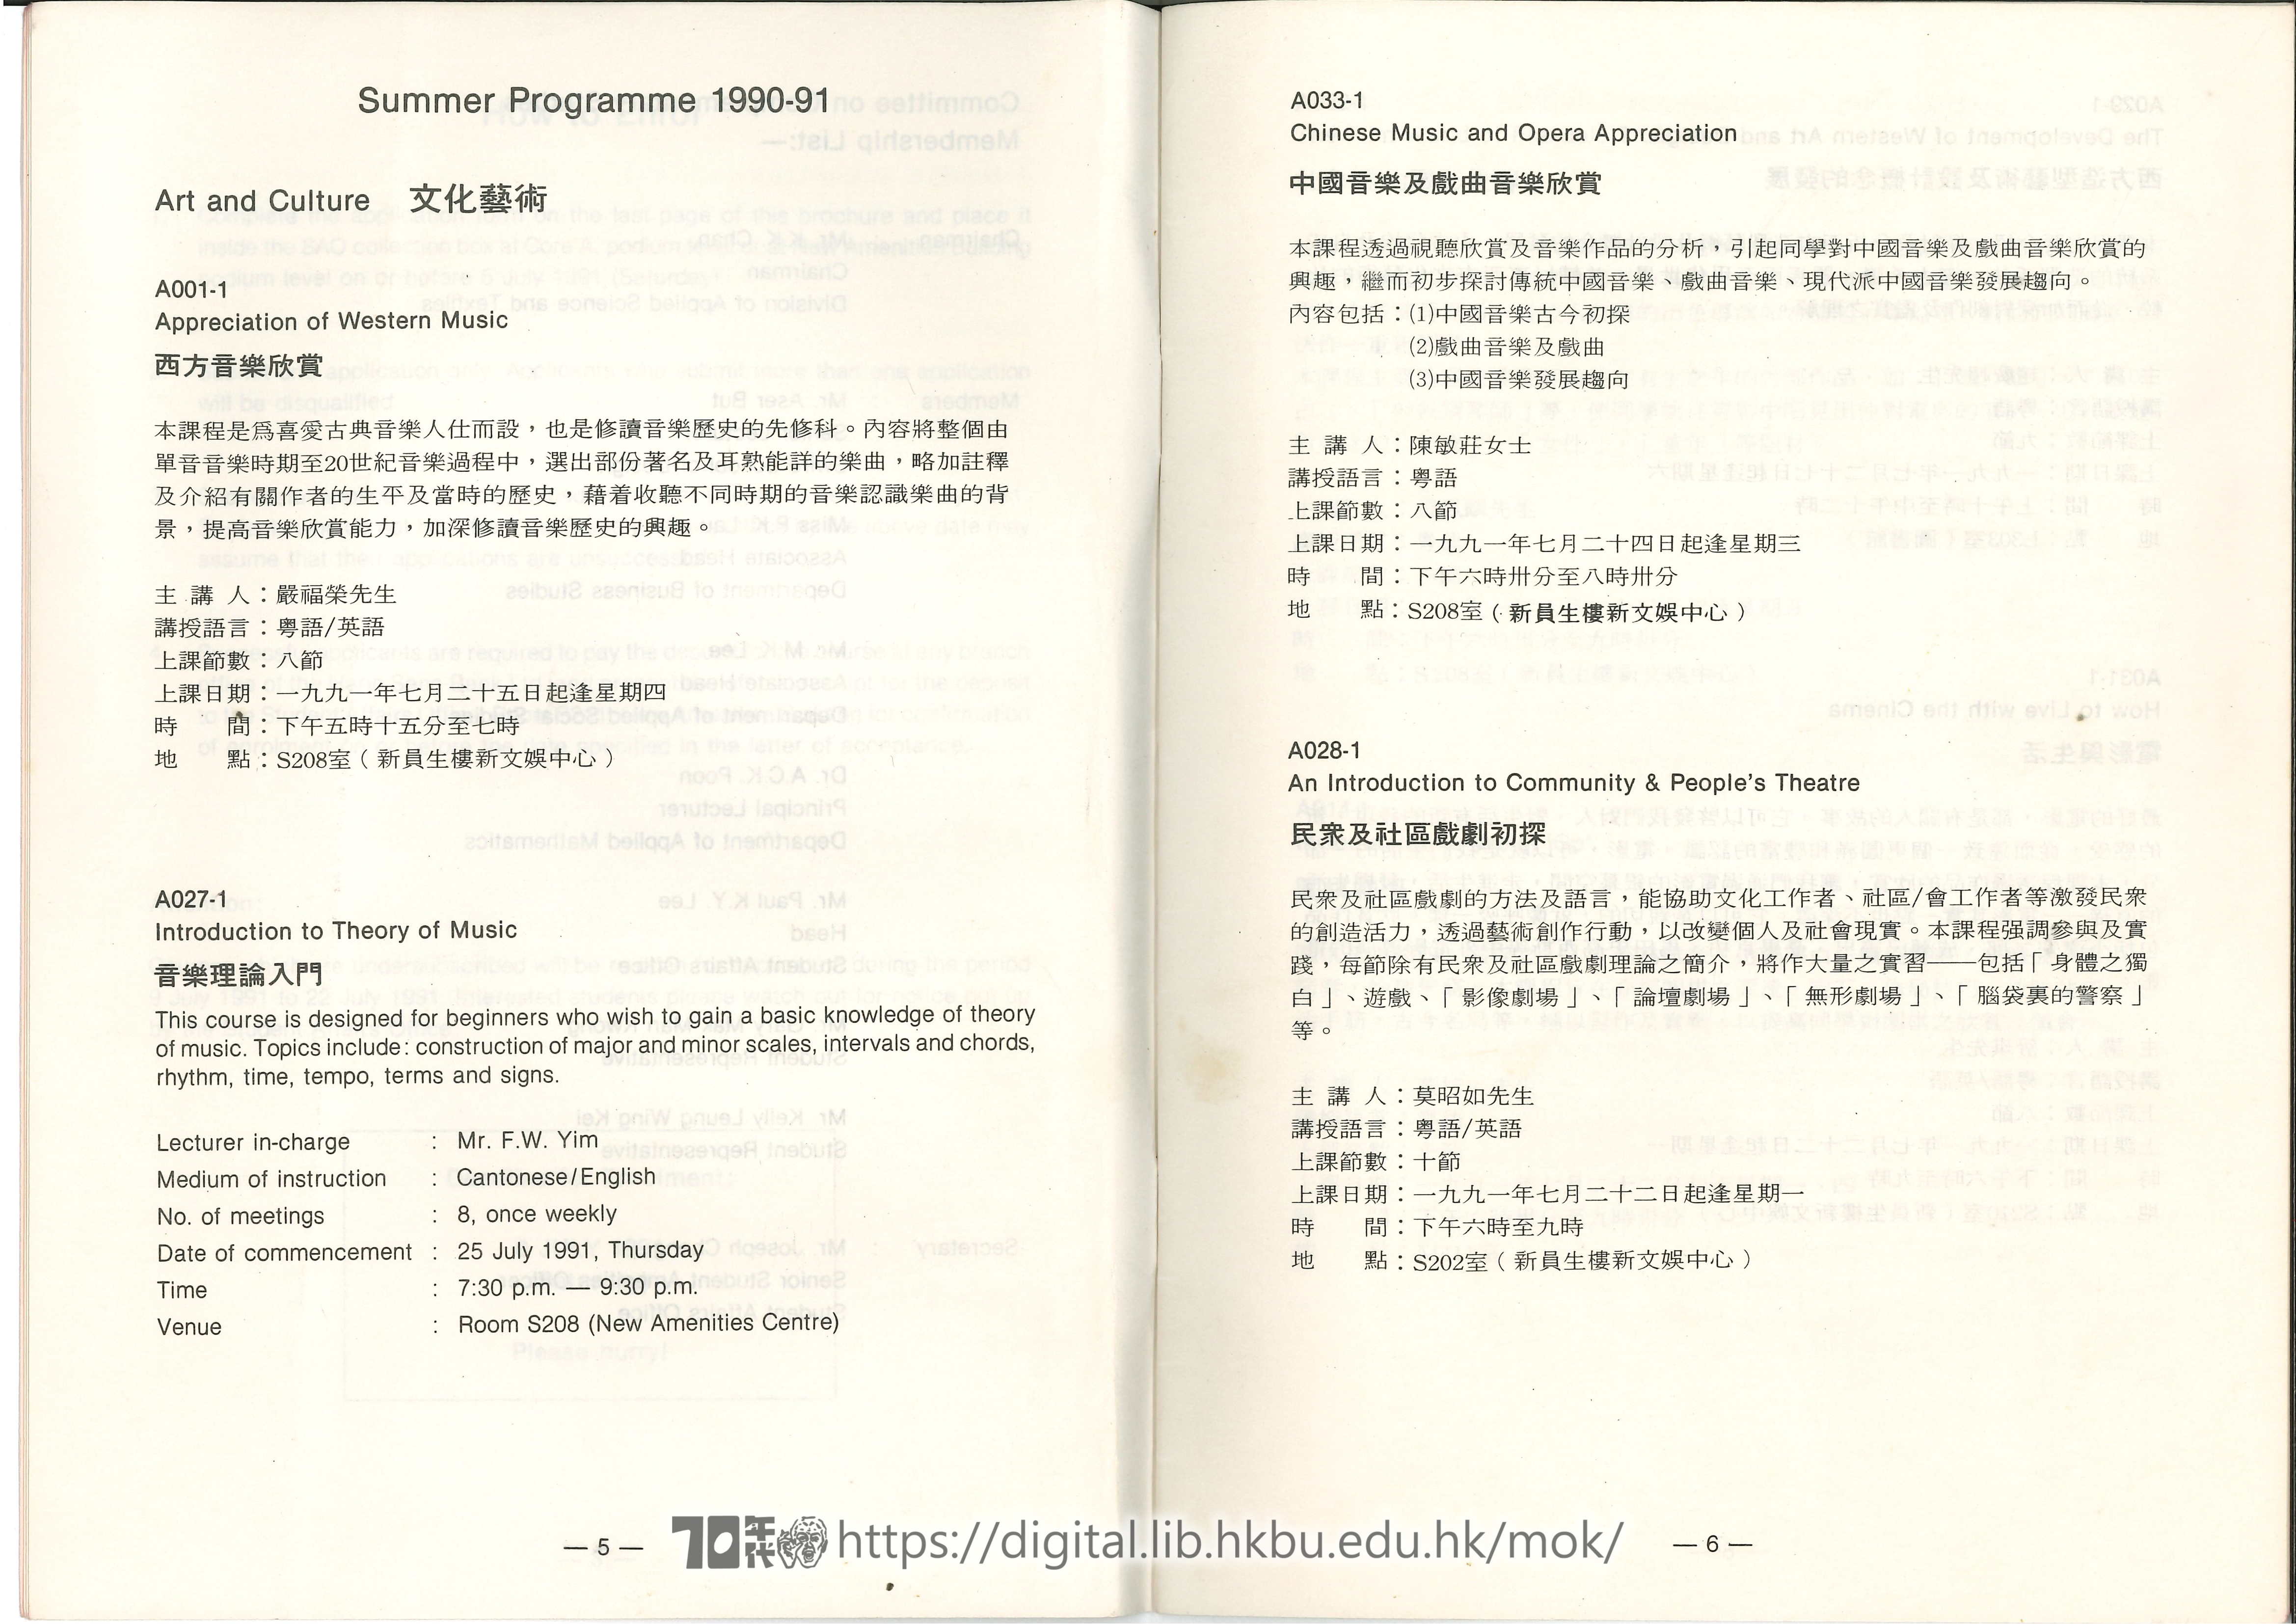   香港理工大學1990年-1991年夏季課程介紹  